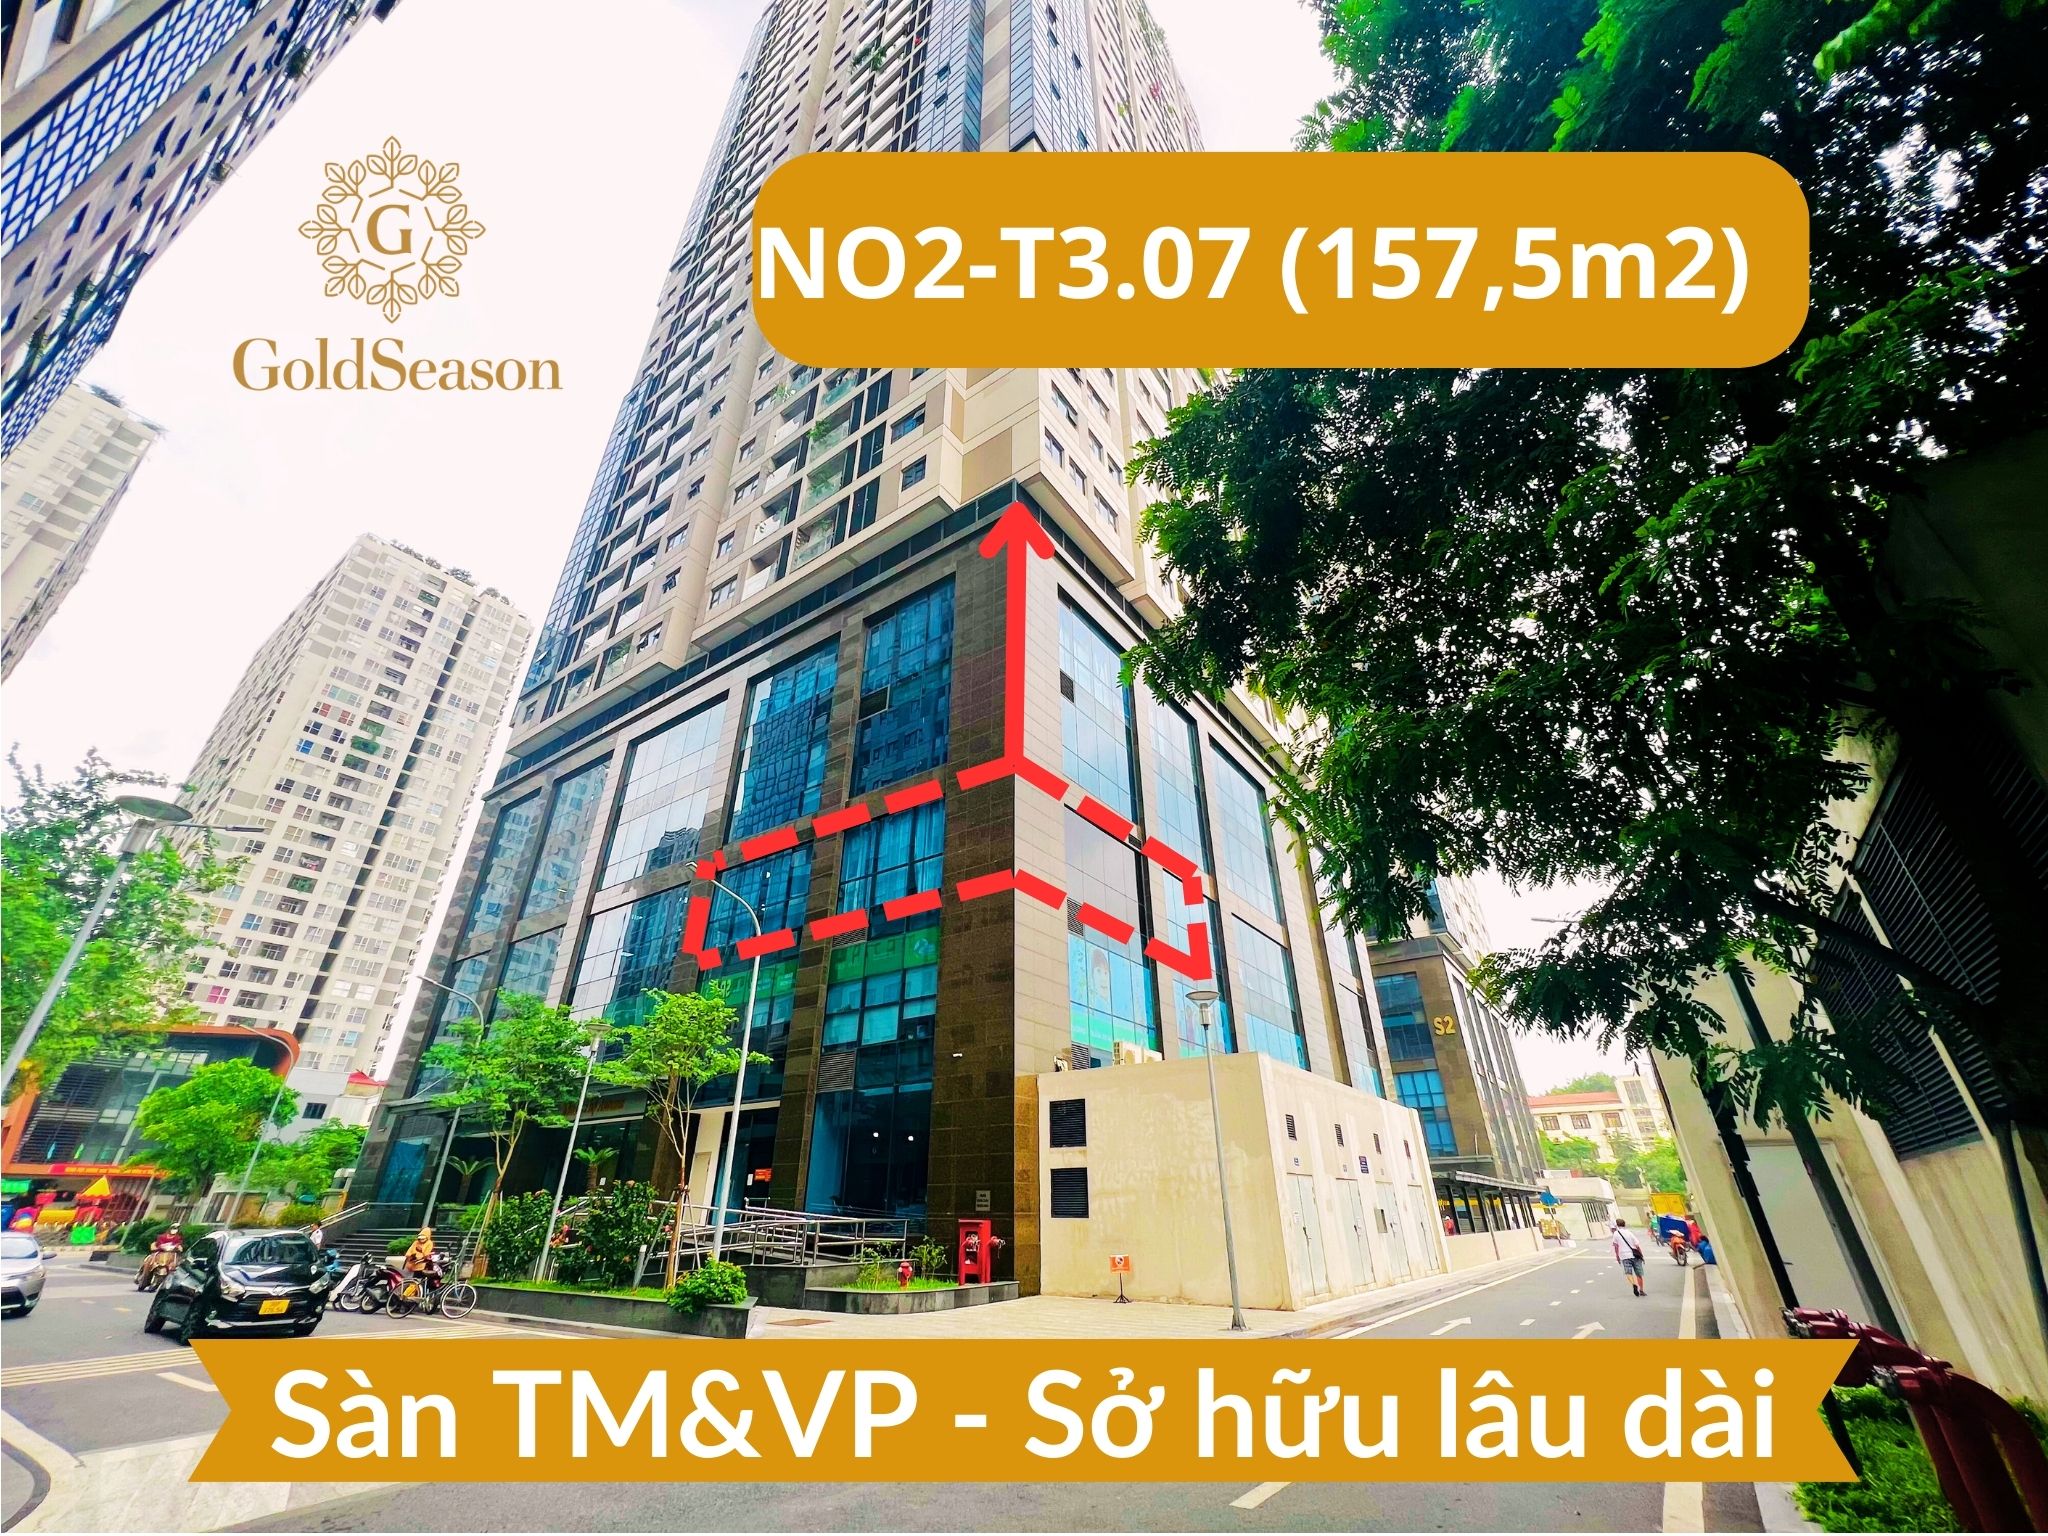 Chính chủ bán lô góc sàn văn phòng 157,5m2 - Sở hữu lâu dài đỉnh nhất quận Thanh Xuân tiền thuê 39,2tr/tháng 1